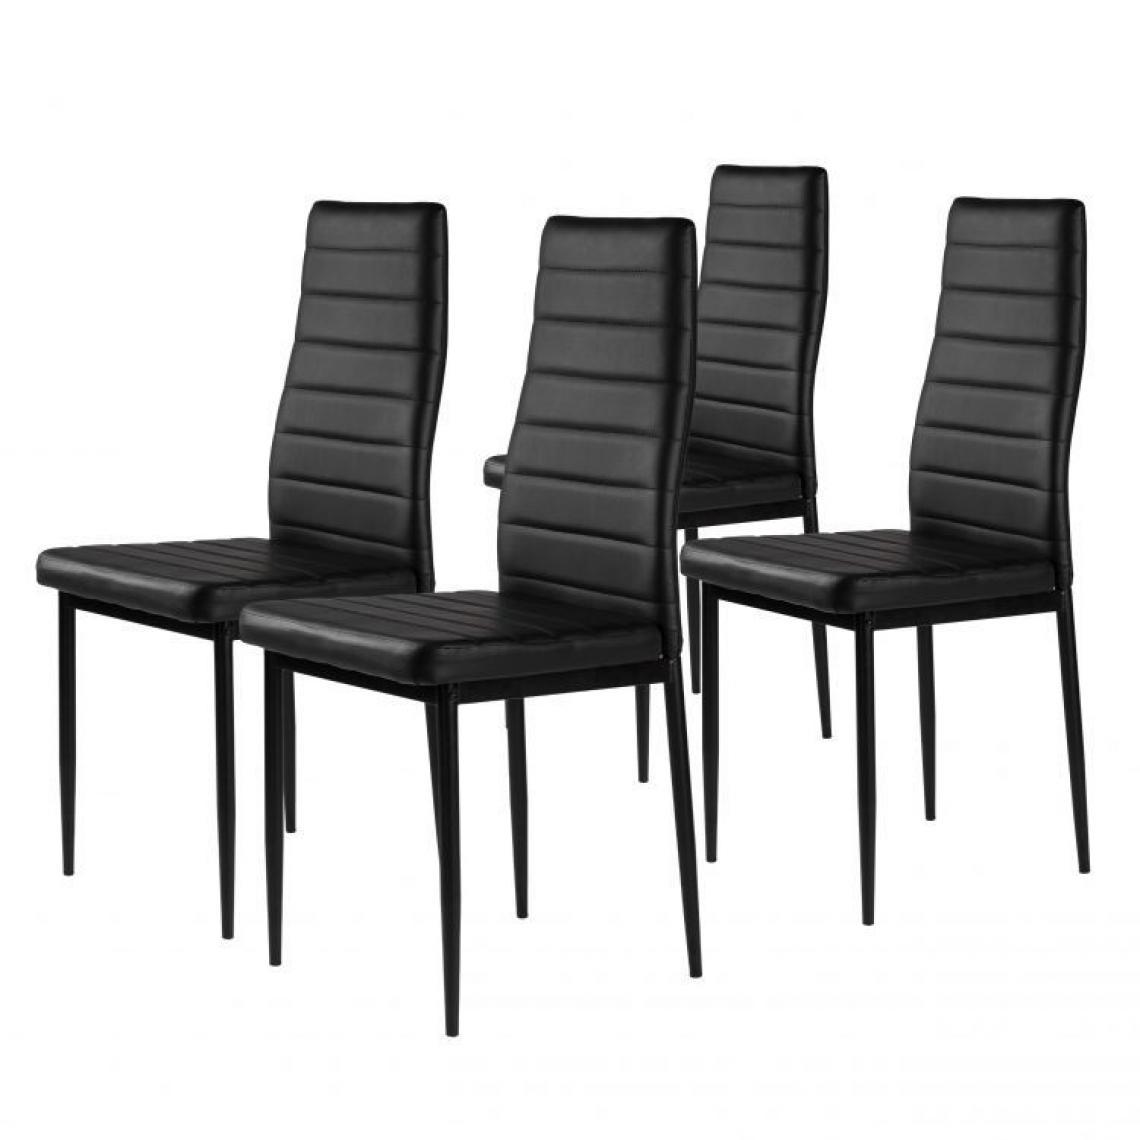 Hucoco - MSTORE - Lot de chaises 4pcs style moderne salle à manger/cuisine - 98x43x41 - Pieds en acier - Noir - Chaises